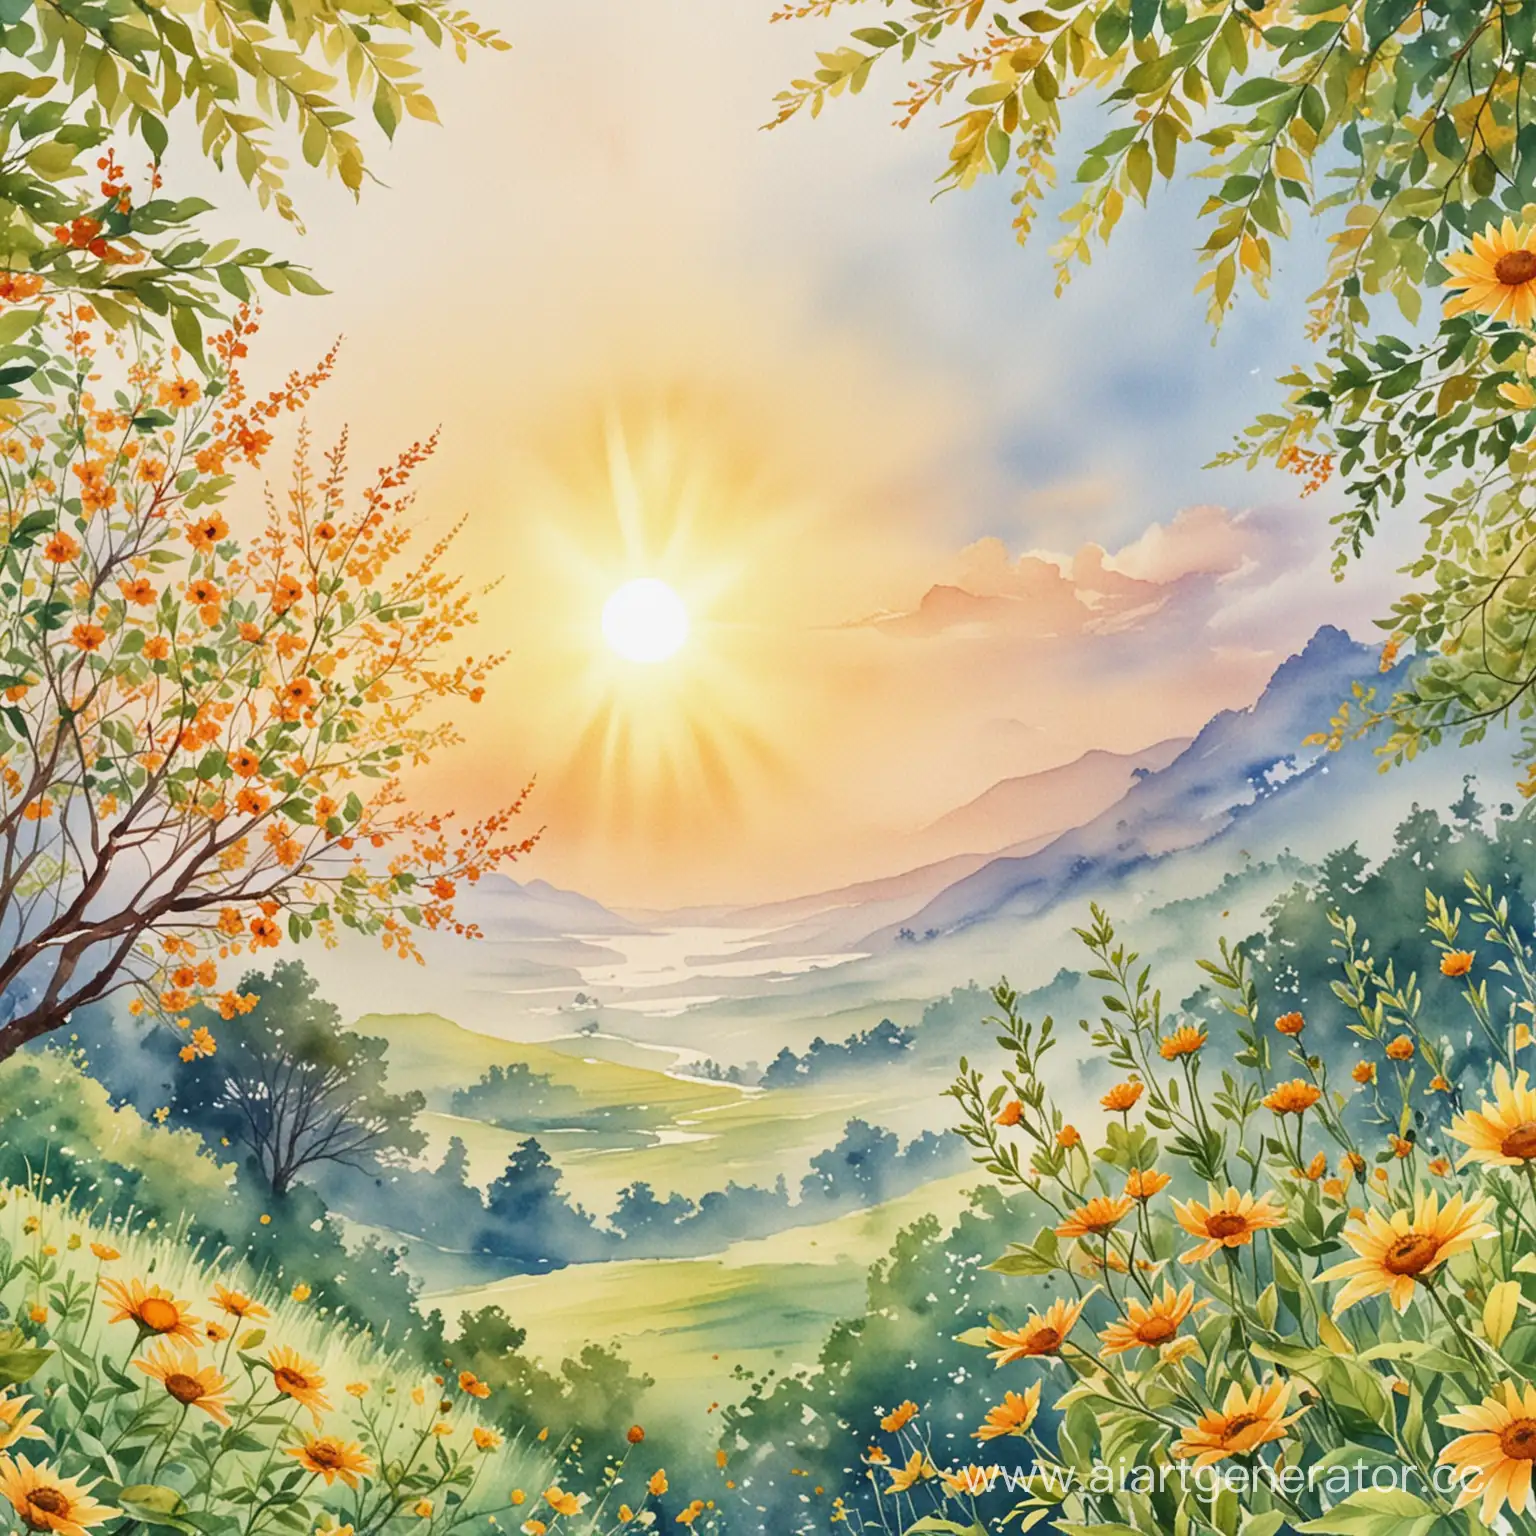 Vibrant-Sunlit-Nature-Serene-Watercolor-Landscape